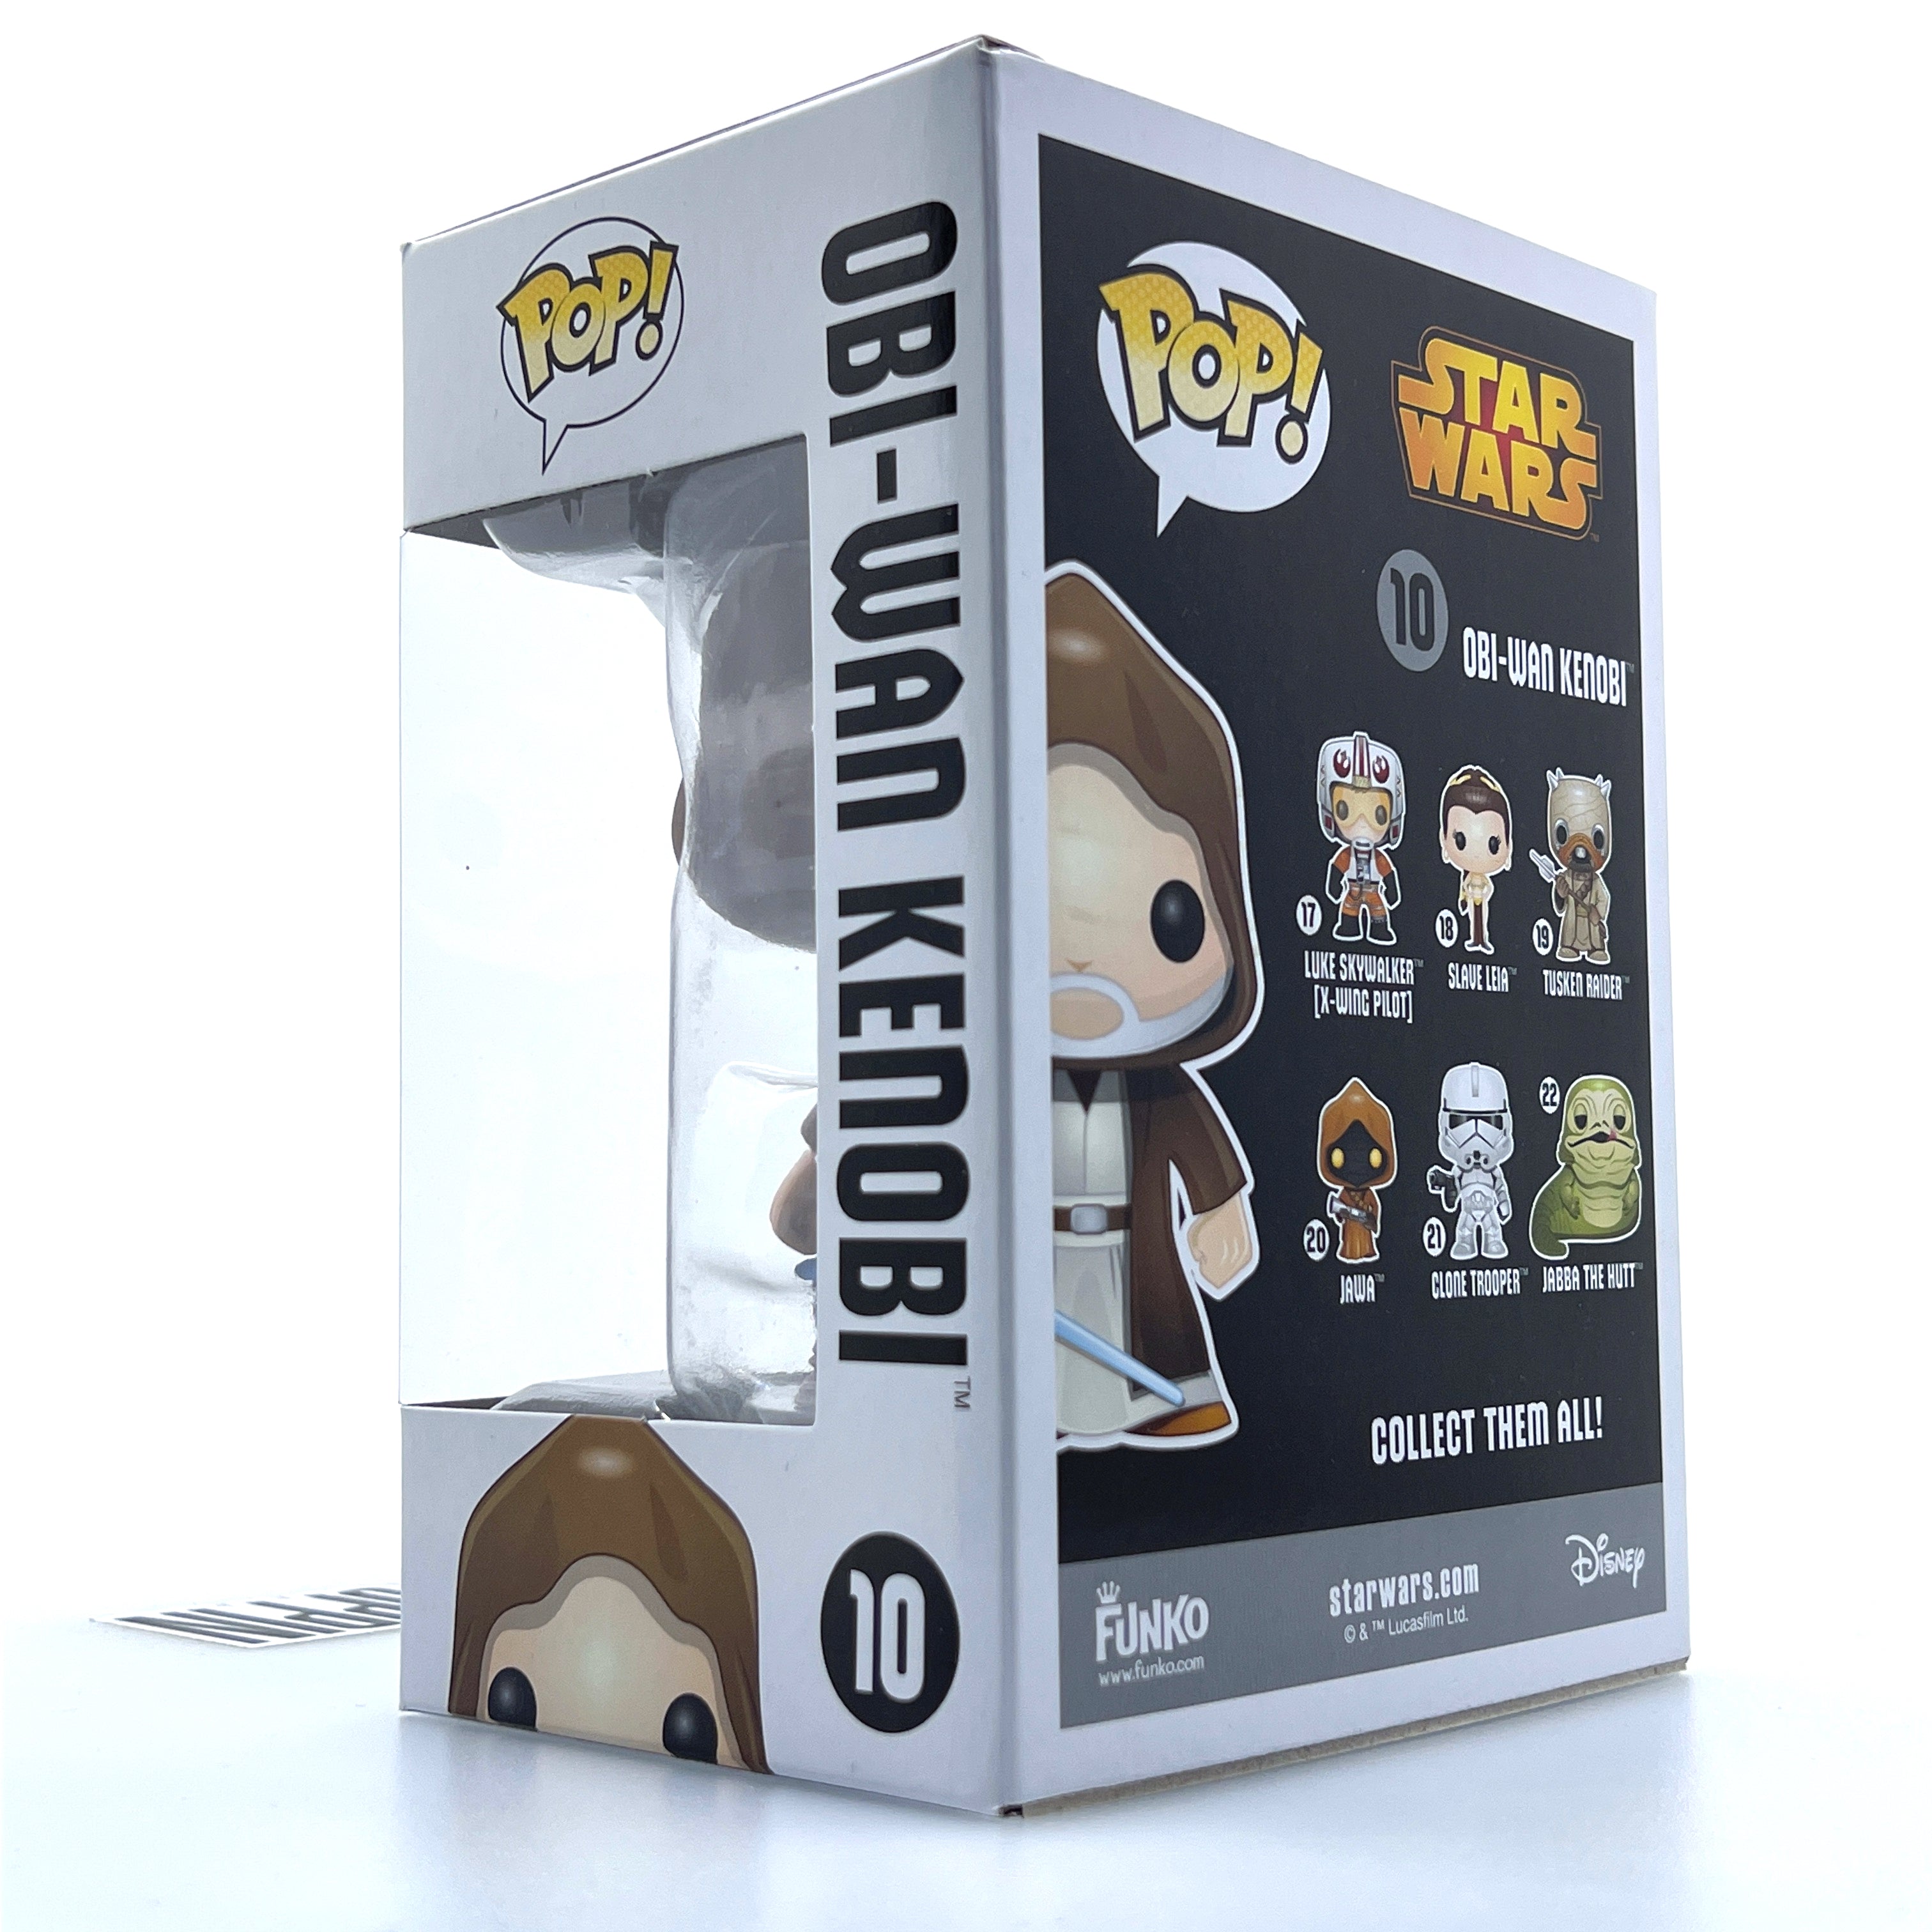 Funko Pop Star Wars Obi Wan Kenobi Vault Edition 10